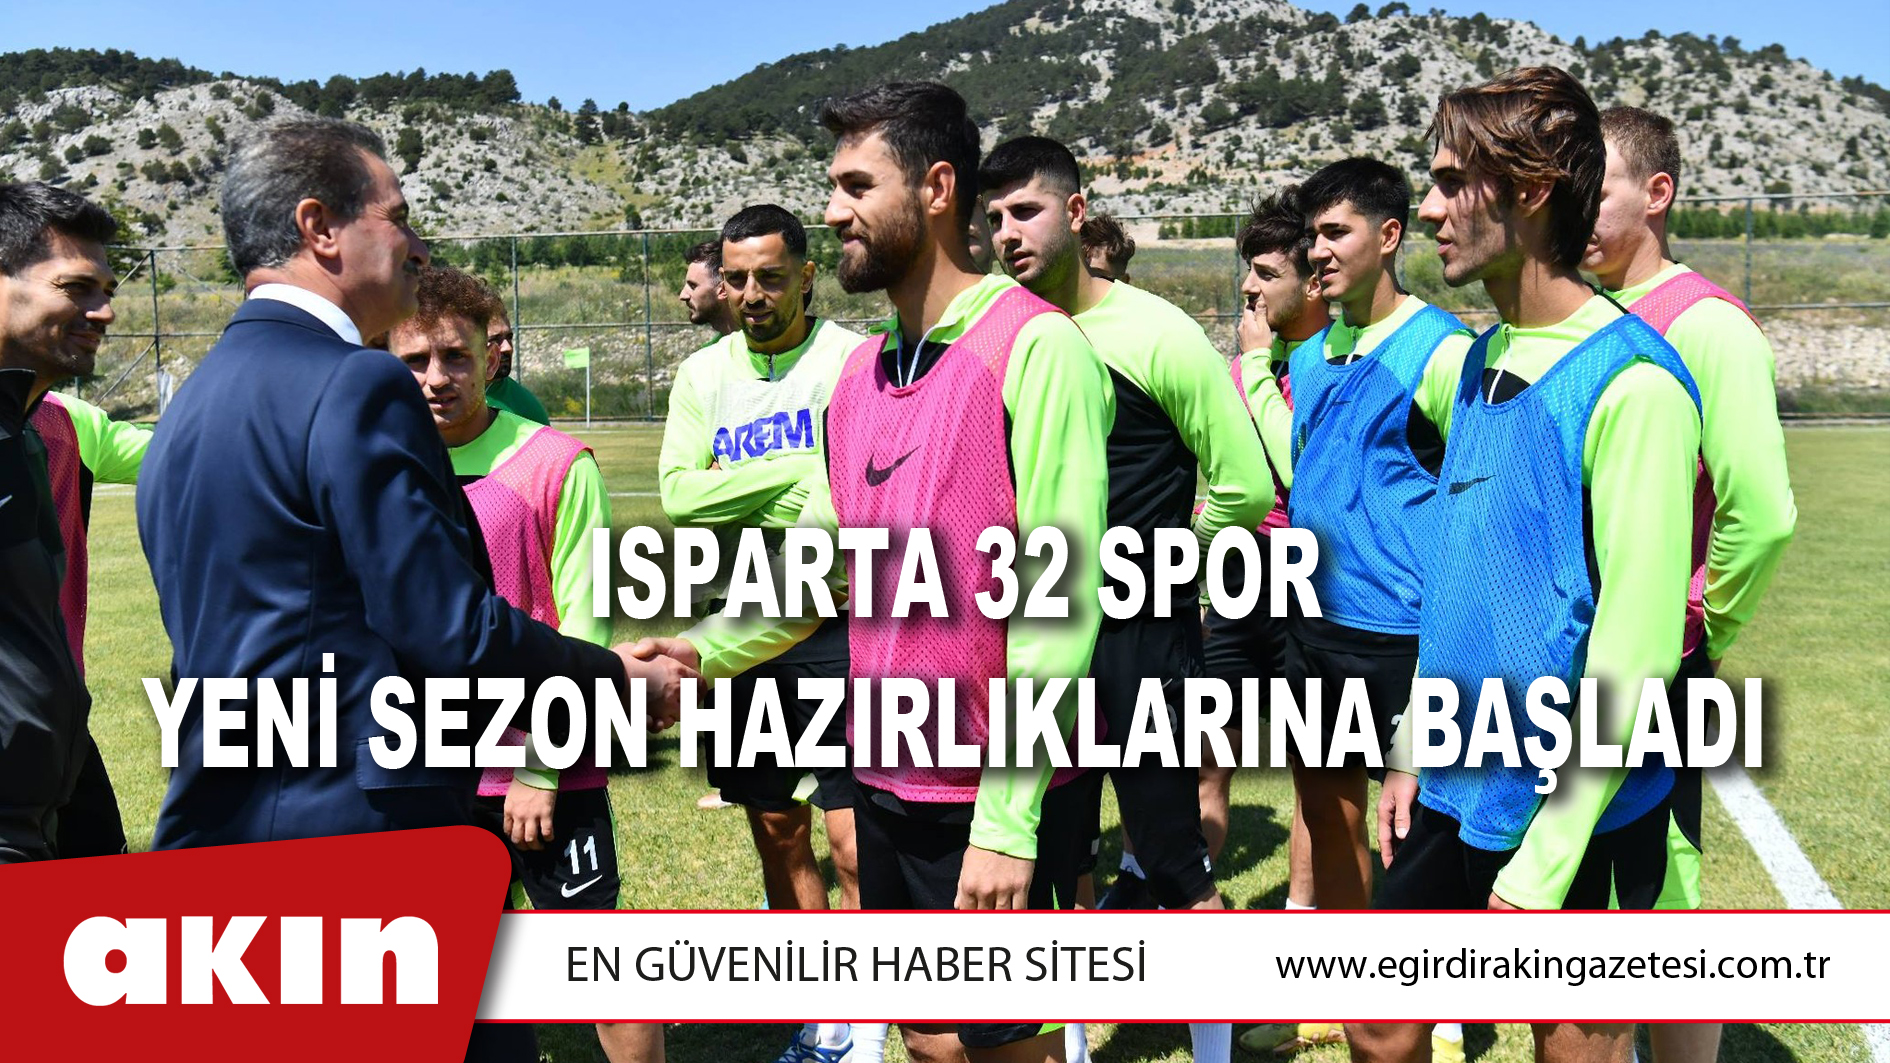 Isparta 32 Spor Yeni Sezon Hazırlıklarına Başladı